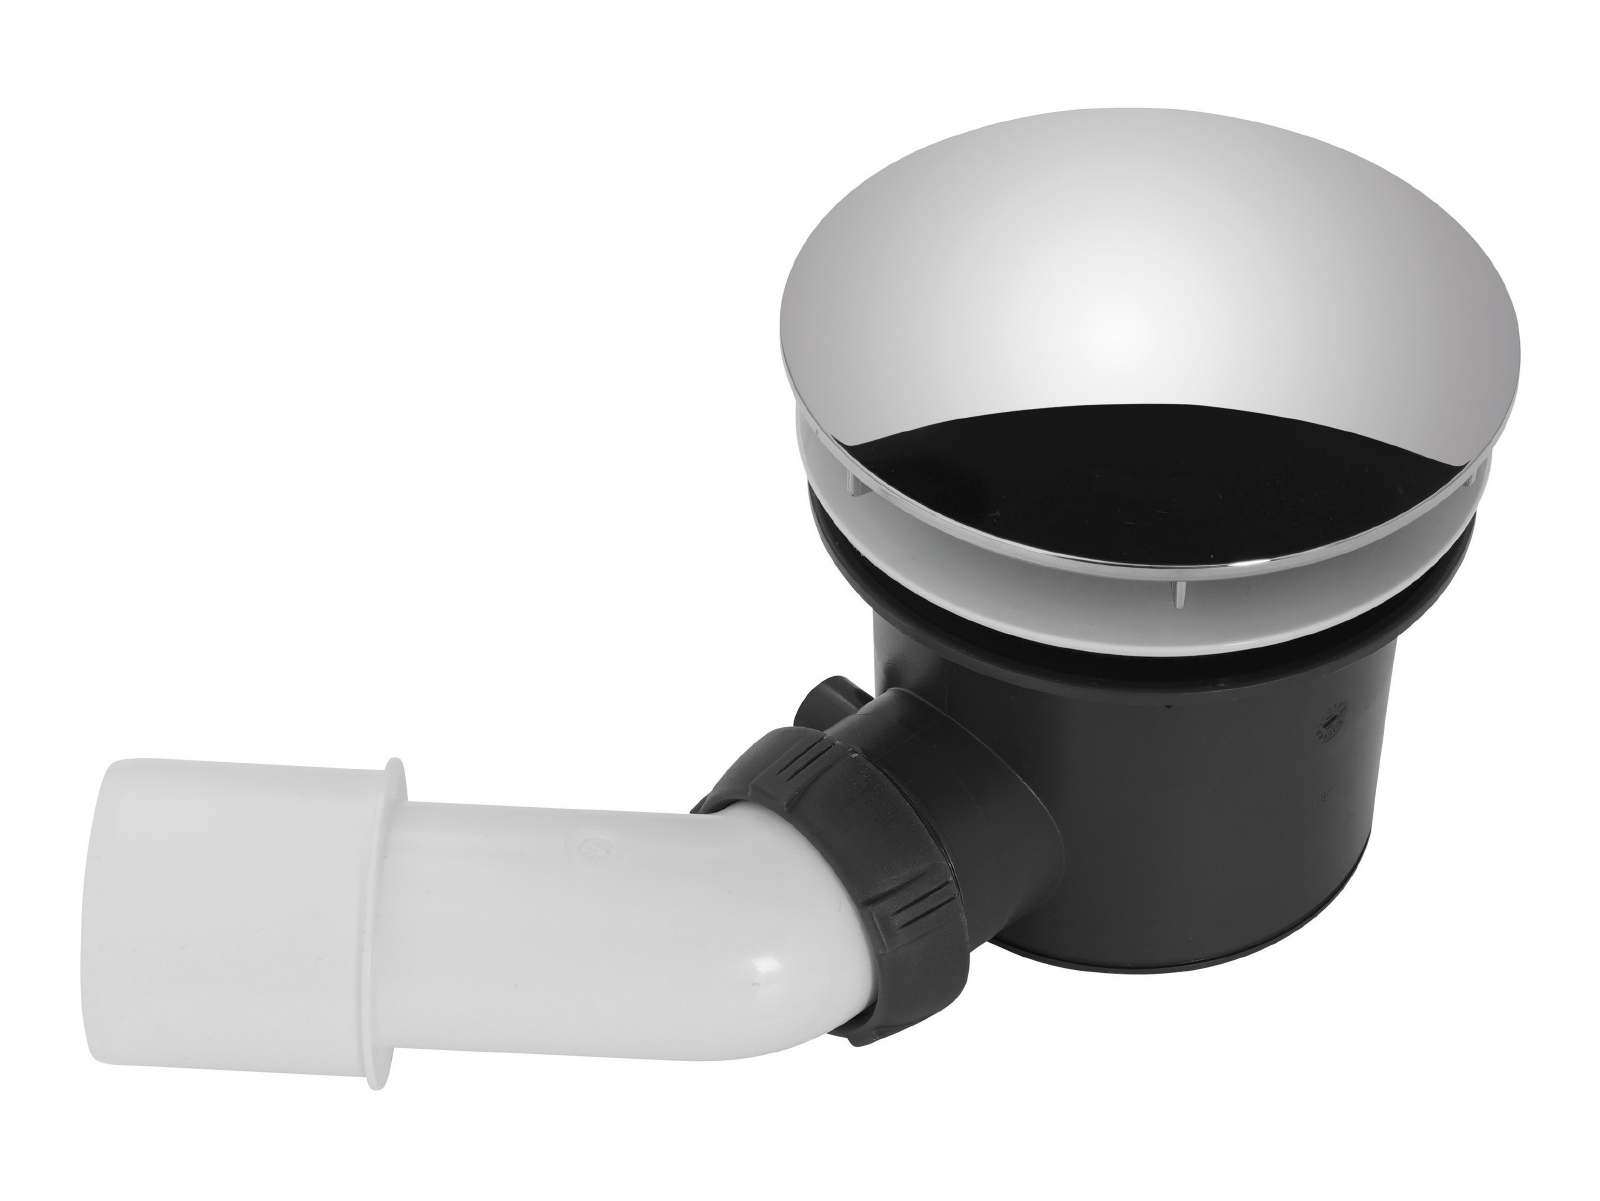 Brausewannen-Ablaufgarnitur für flache Duschen in Weiß, 90 mm, mit Siphon und Abdeckung in Chrom